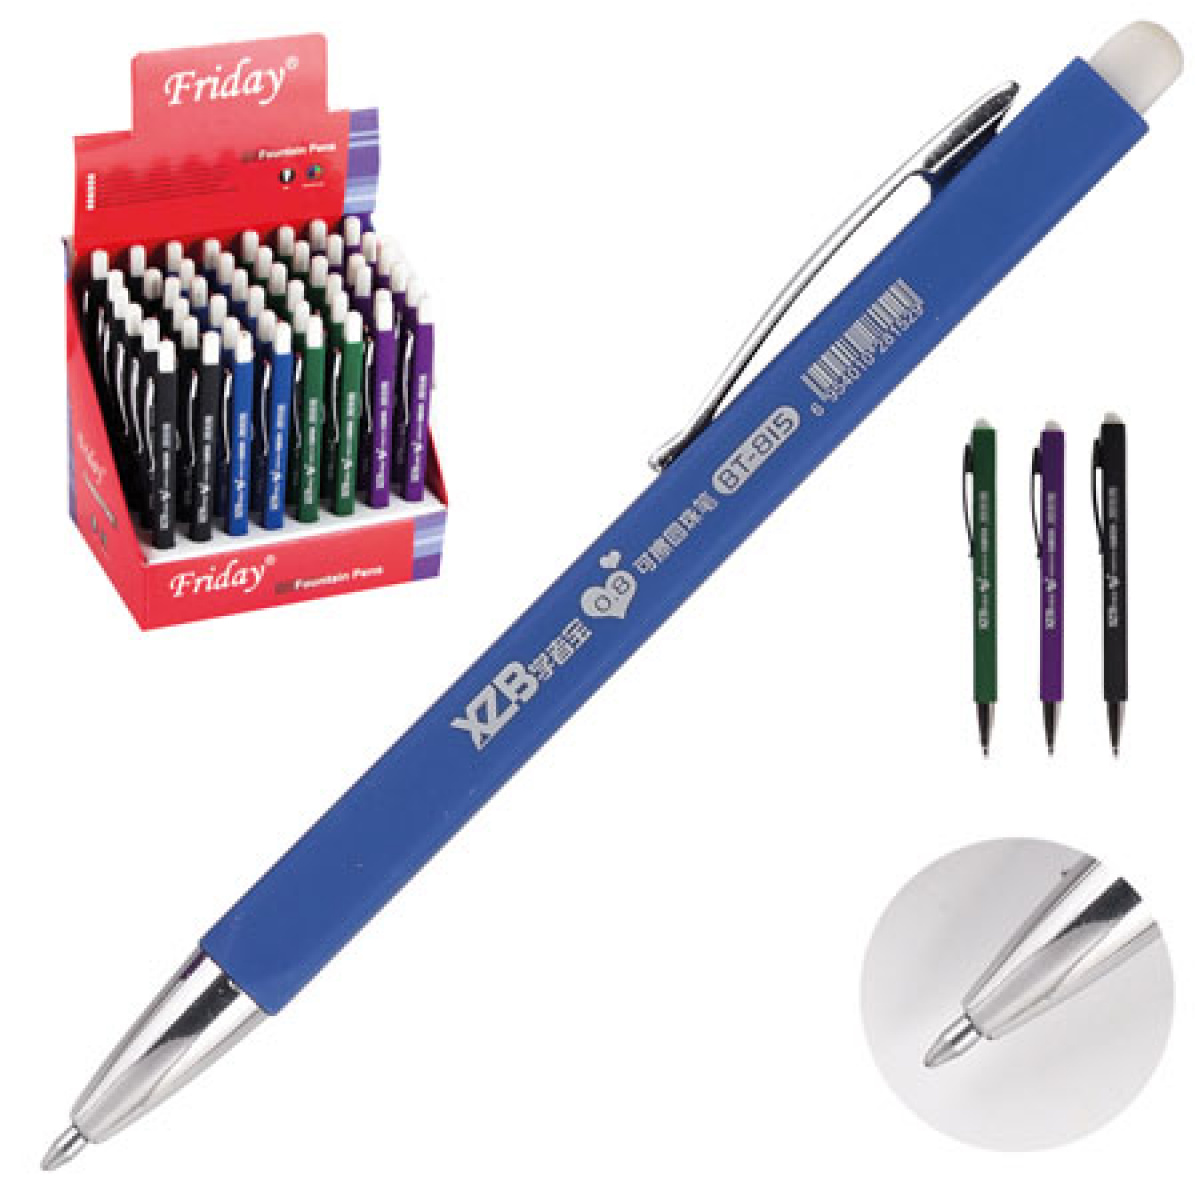 Ручка за 5 рублей. Ручка шар. "Gesture пиши-стирай" 0,8мм синяя. Ручки со стираемыми чернилами. Шариковая ручка со стирающимися чернилами. Ручка самостирающаяся шариковая.